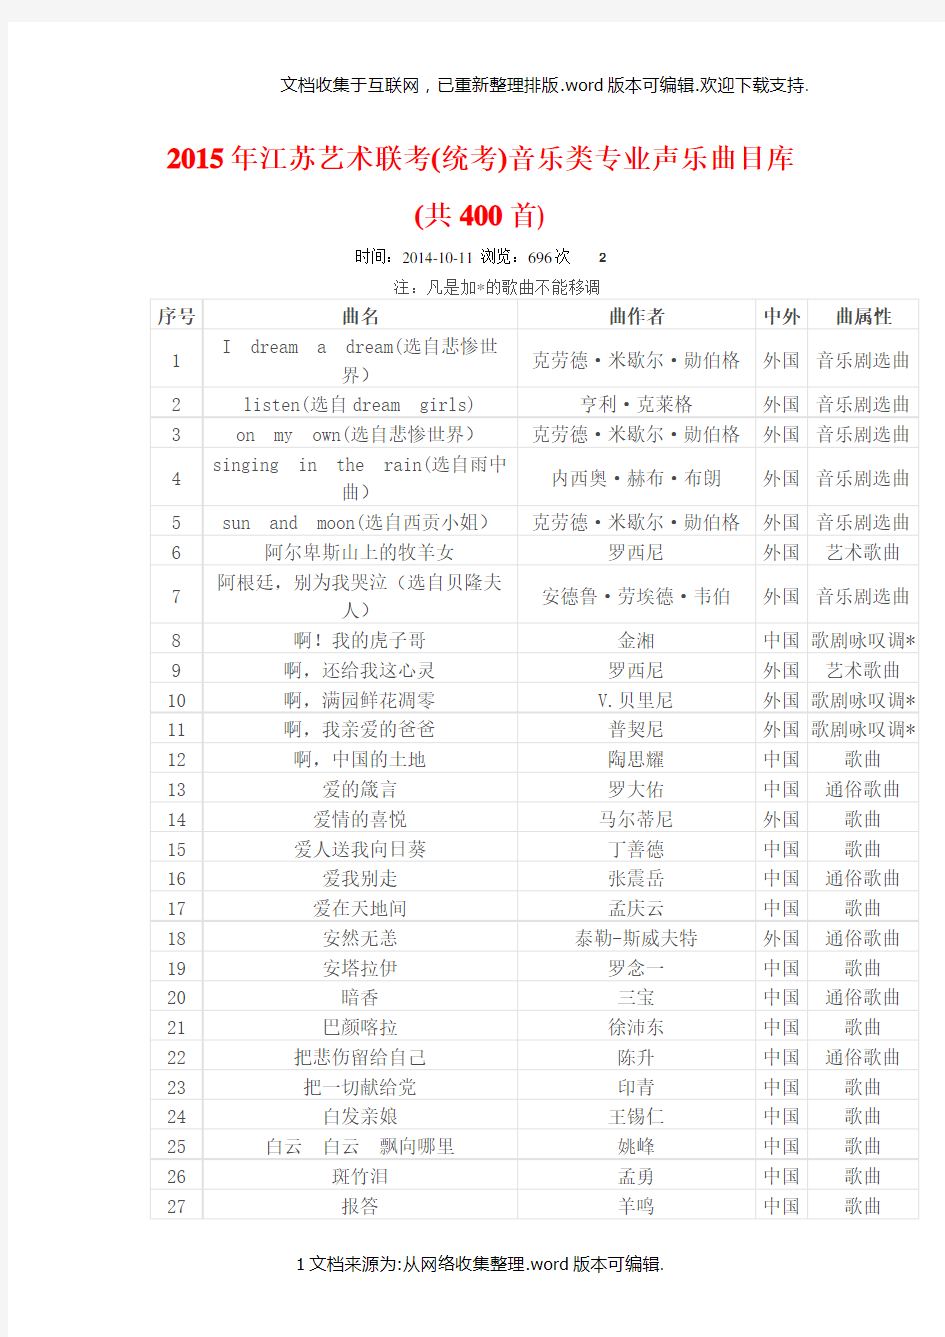 2020年江苏艺术联考(统考)音乐类专业声乐曲目库(共400首)